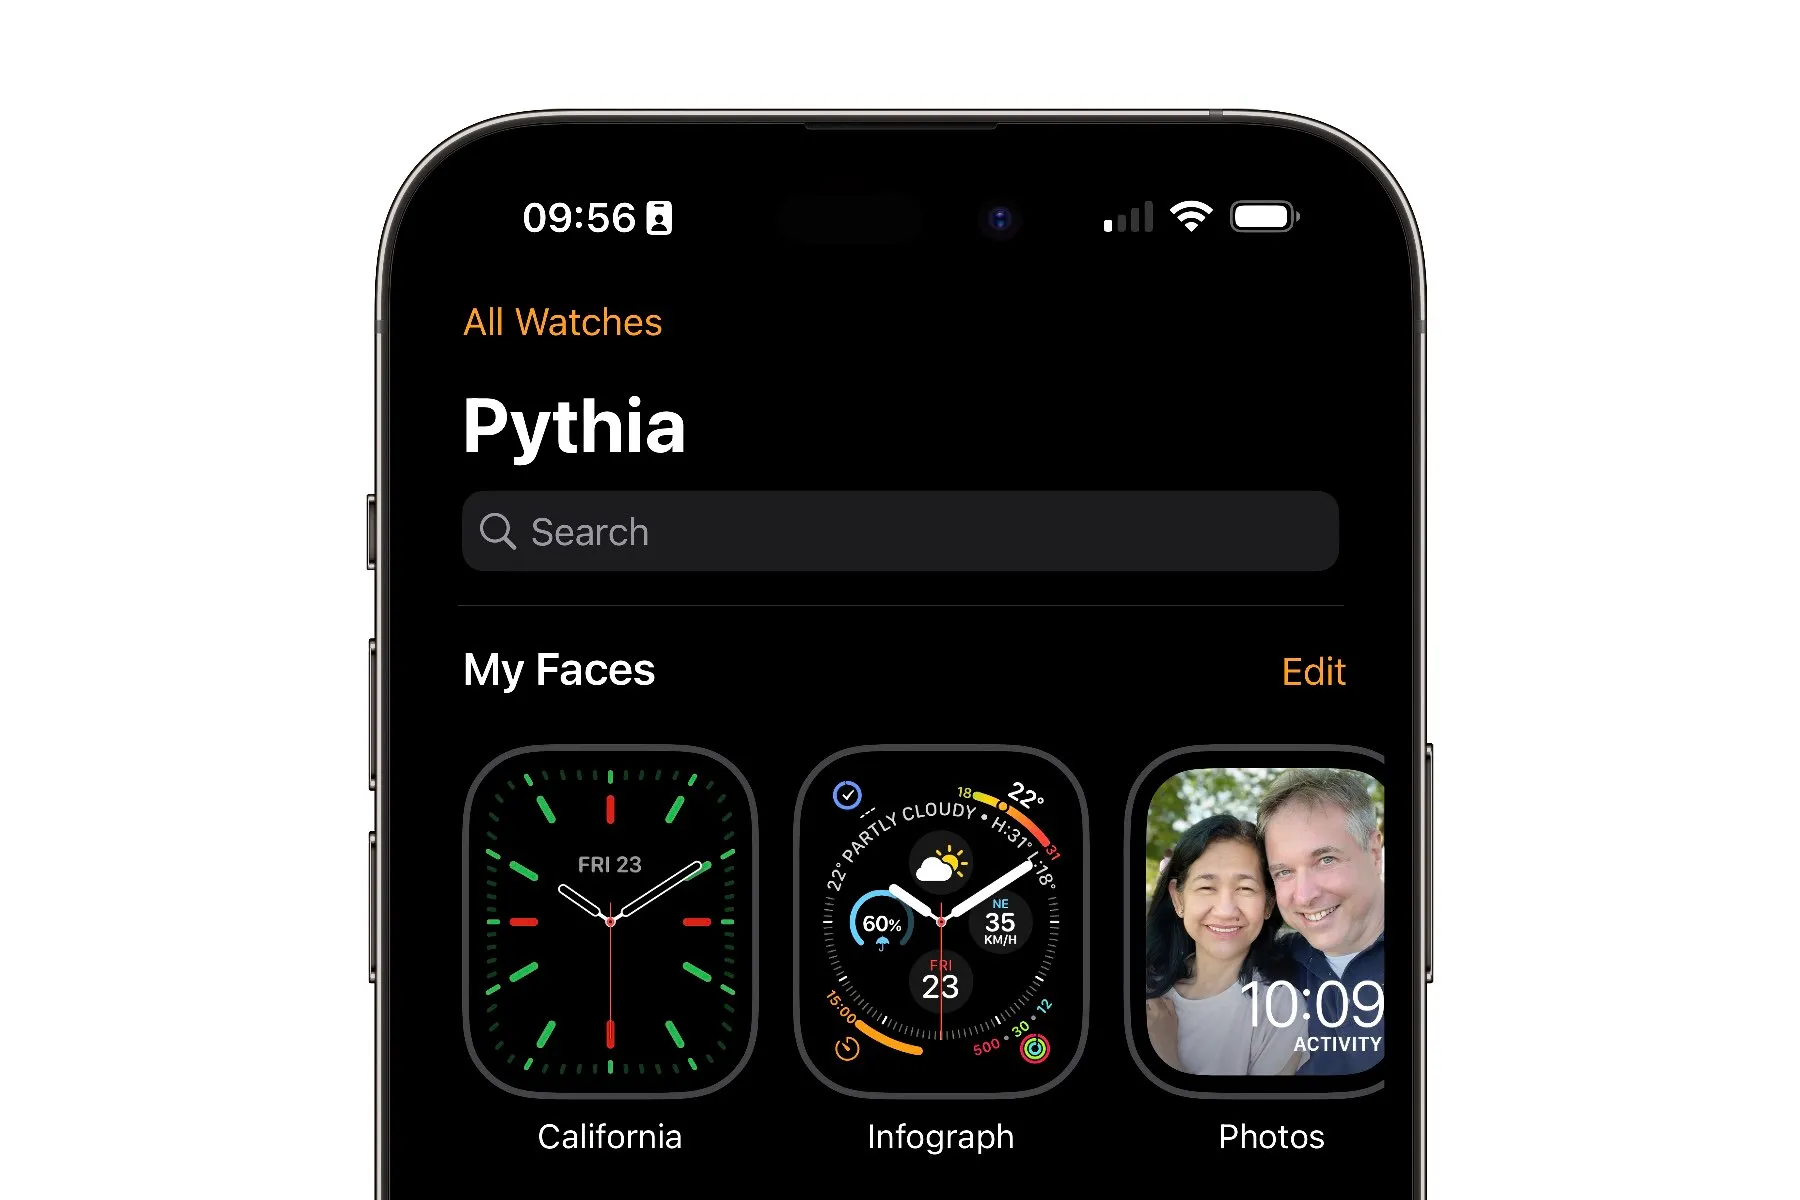 iPhone mostrando la vista Mi reloj en la app Apple Watch.